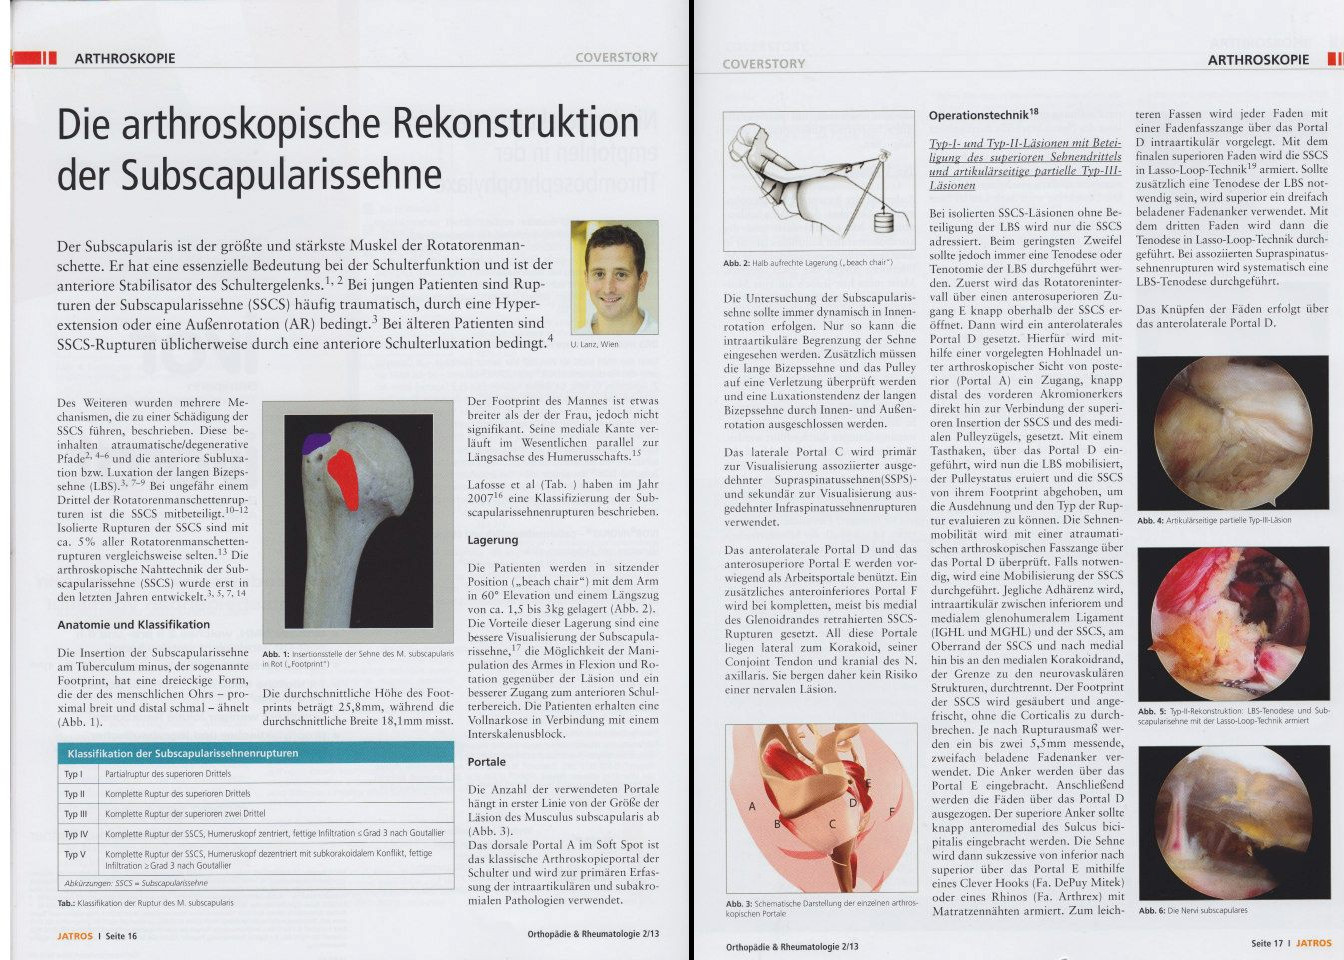 Die-arthroskopische-Rekonstruktion-der-Subcapularissehne_Jatros_Seite 1u2